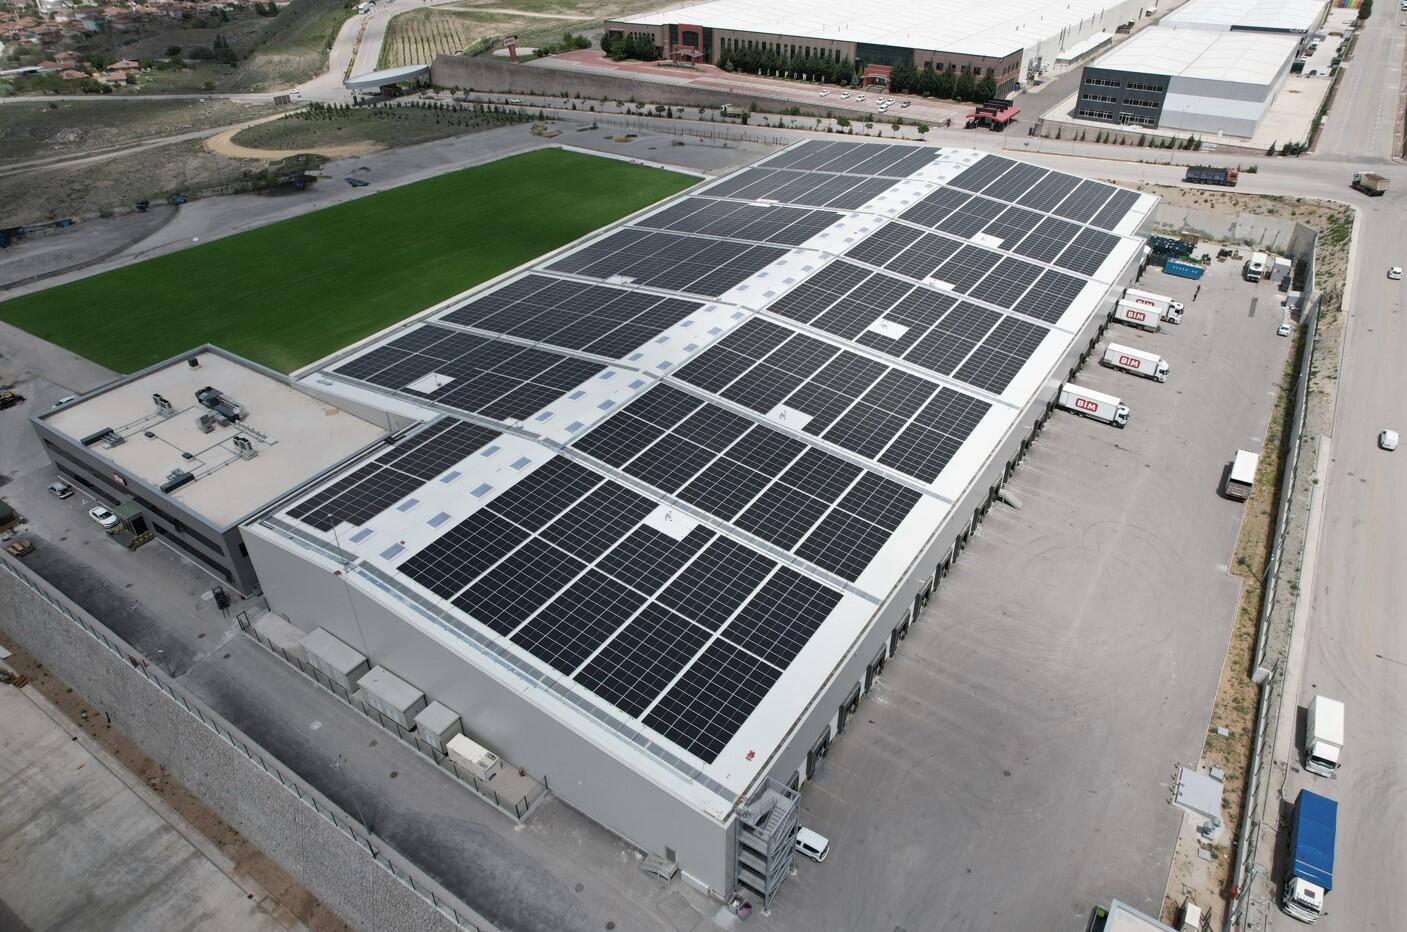 Market zinciri, güneş gücü santrali yatırımlarını sürdürüyor